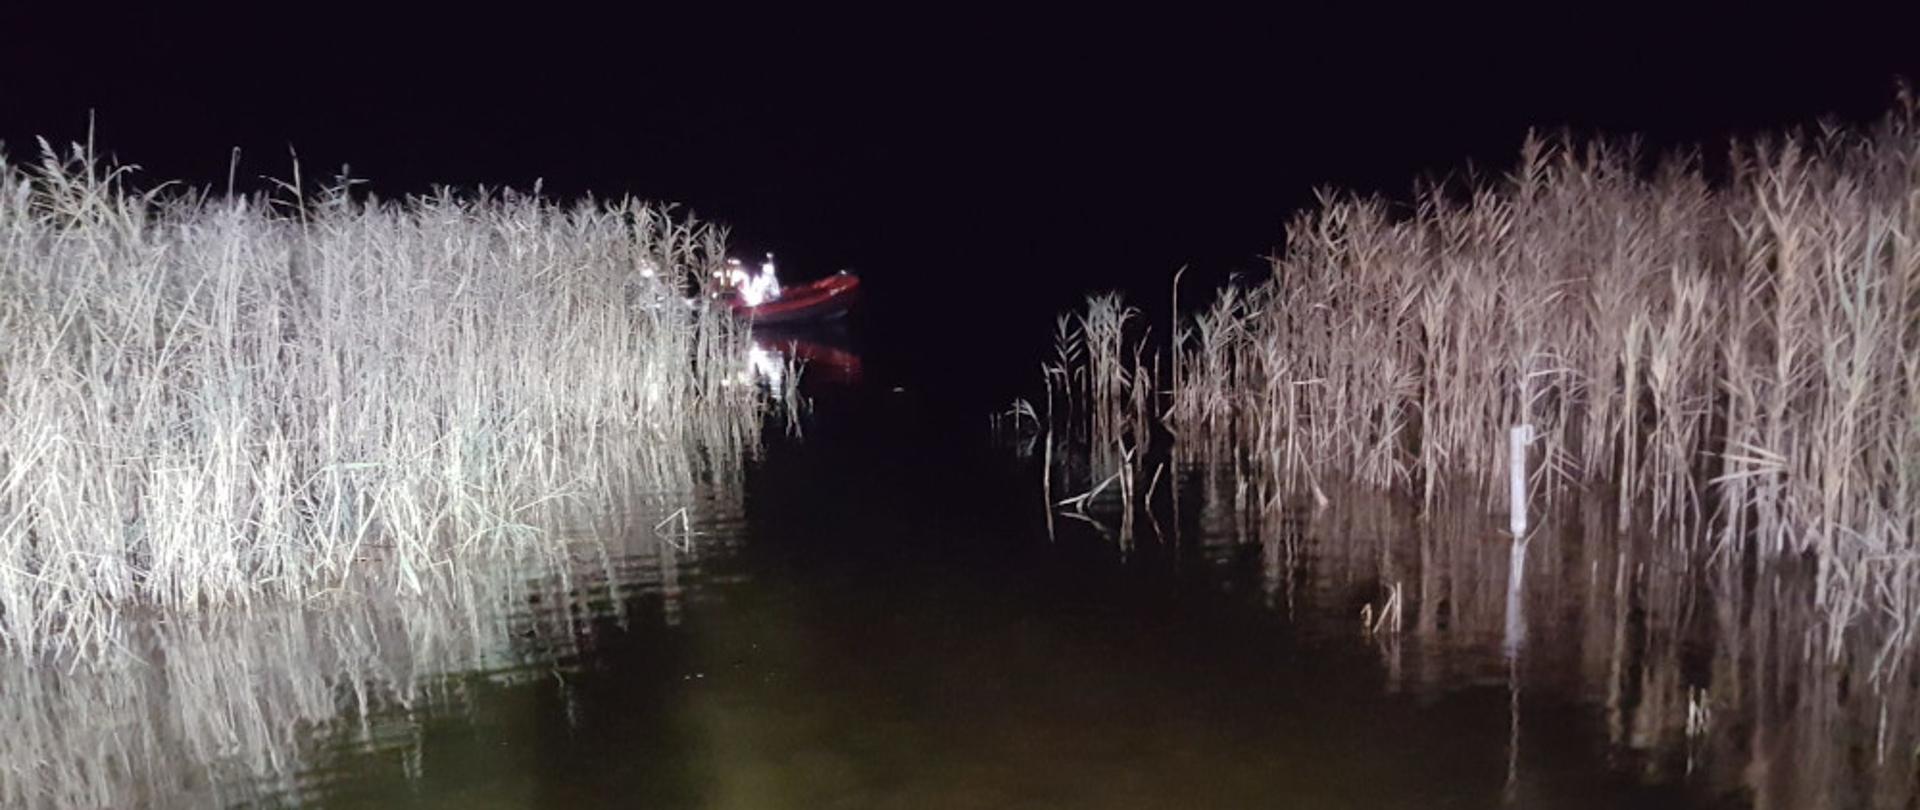 Poszukiwania na jeziorze Wilczkowo w Szczecinku - strażacy na łodzi ratowniczej pływają po wodzie